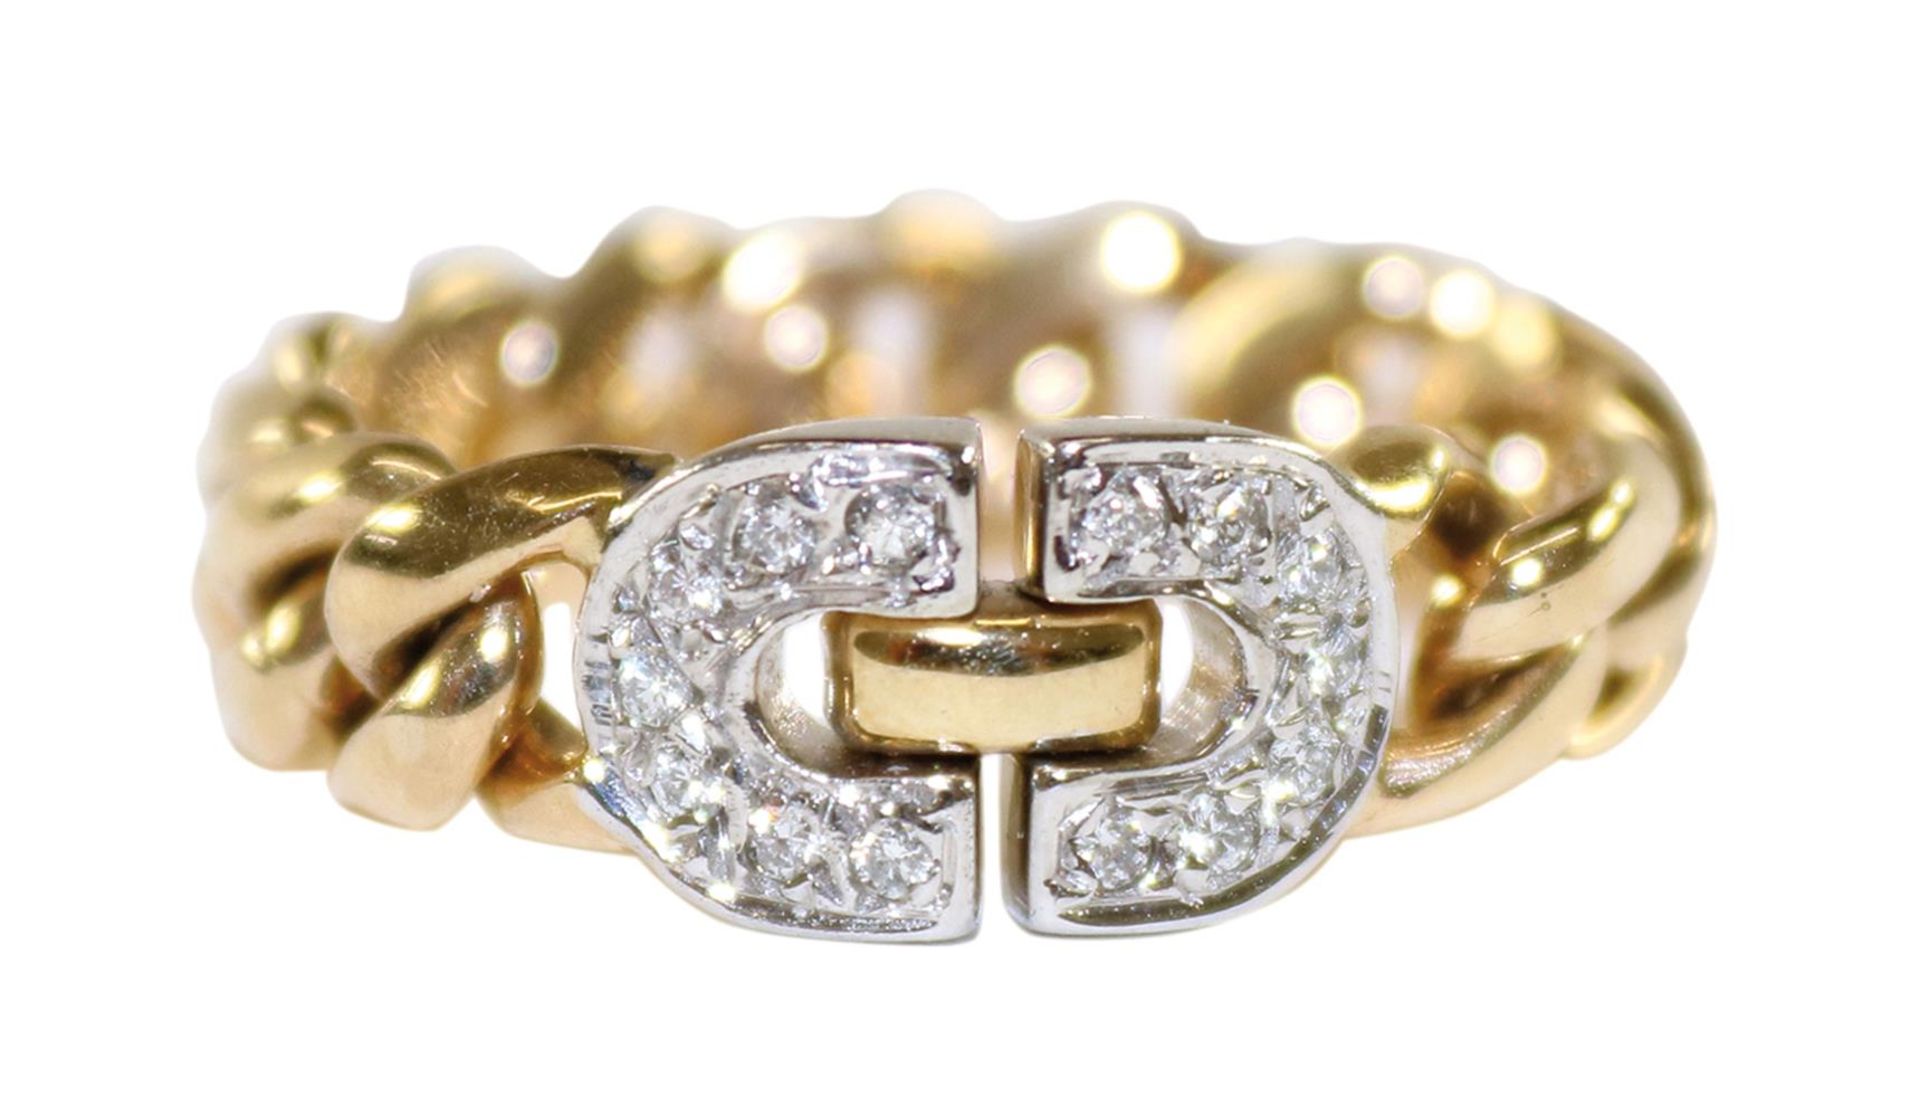 Kettenring Diamant 585 GG.Ring aus Kettengliedern in Gelbgold mit Diamantbesatz von 0,1 ct.